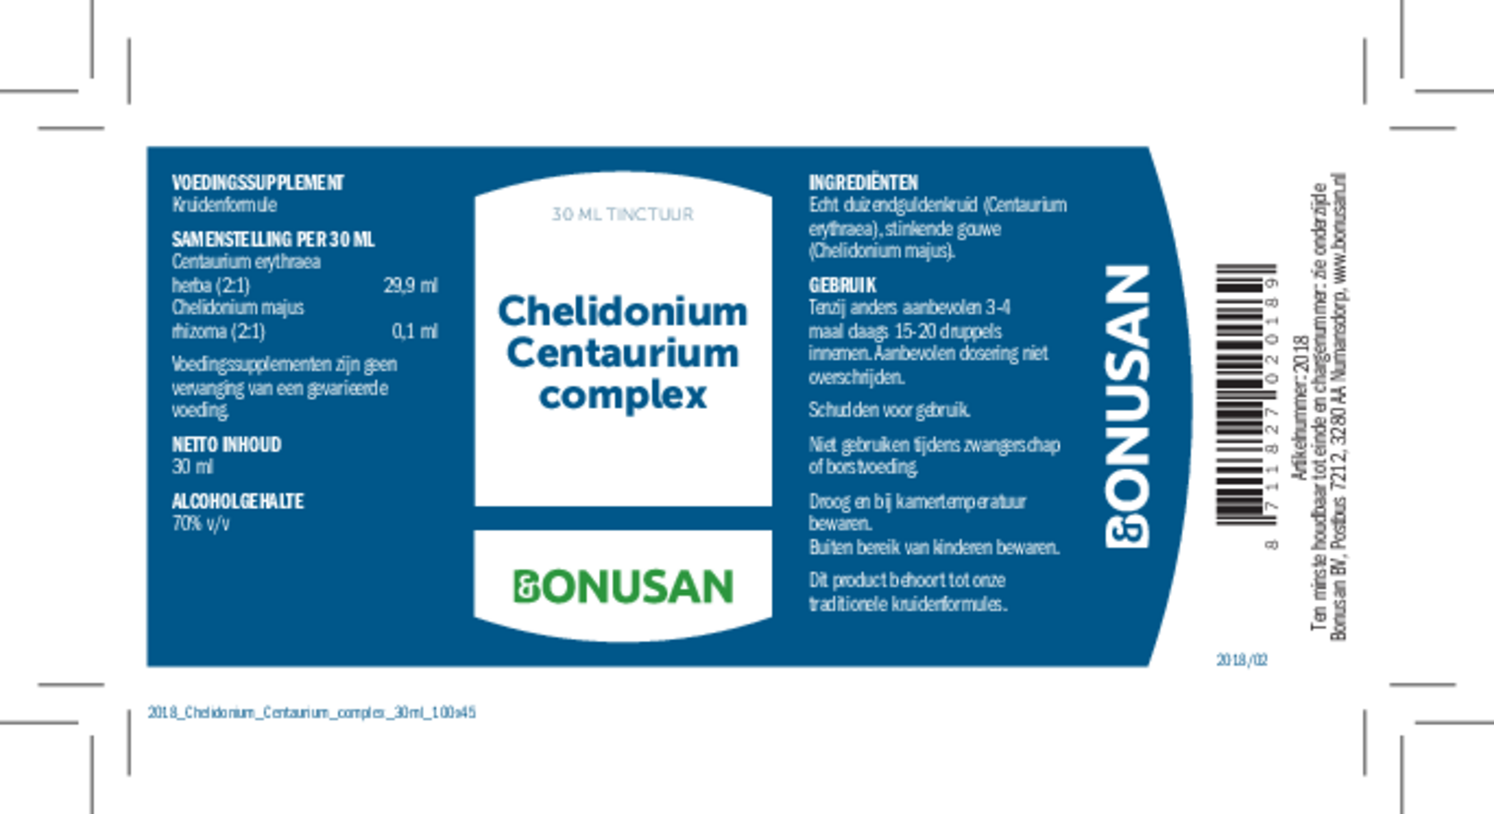 Chelidonium Centaurium Complex Tinctuur afbeelding van document #1, etiket